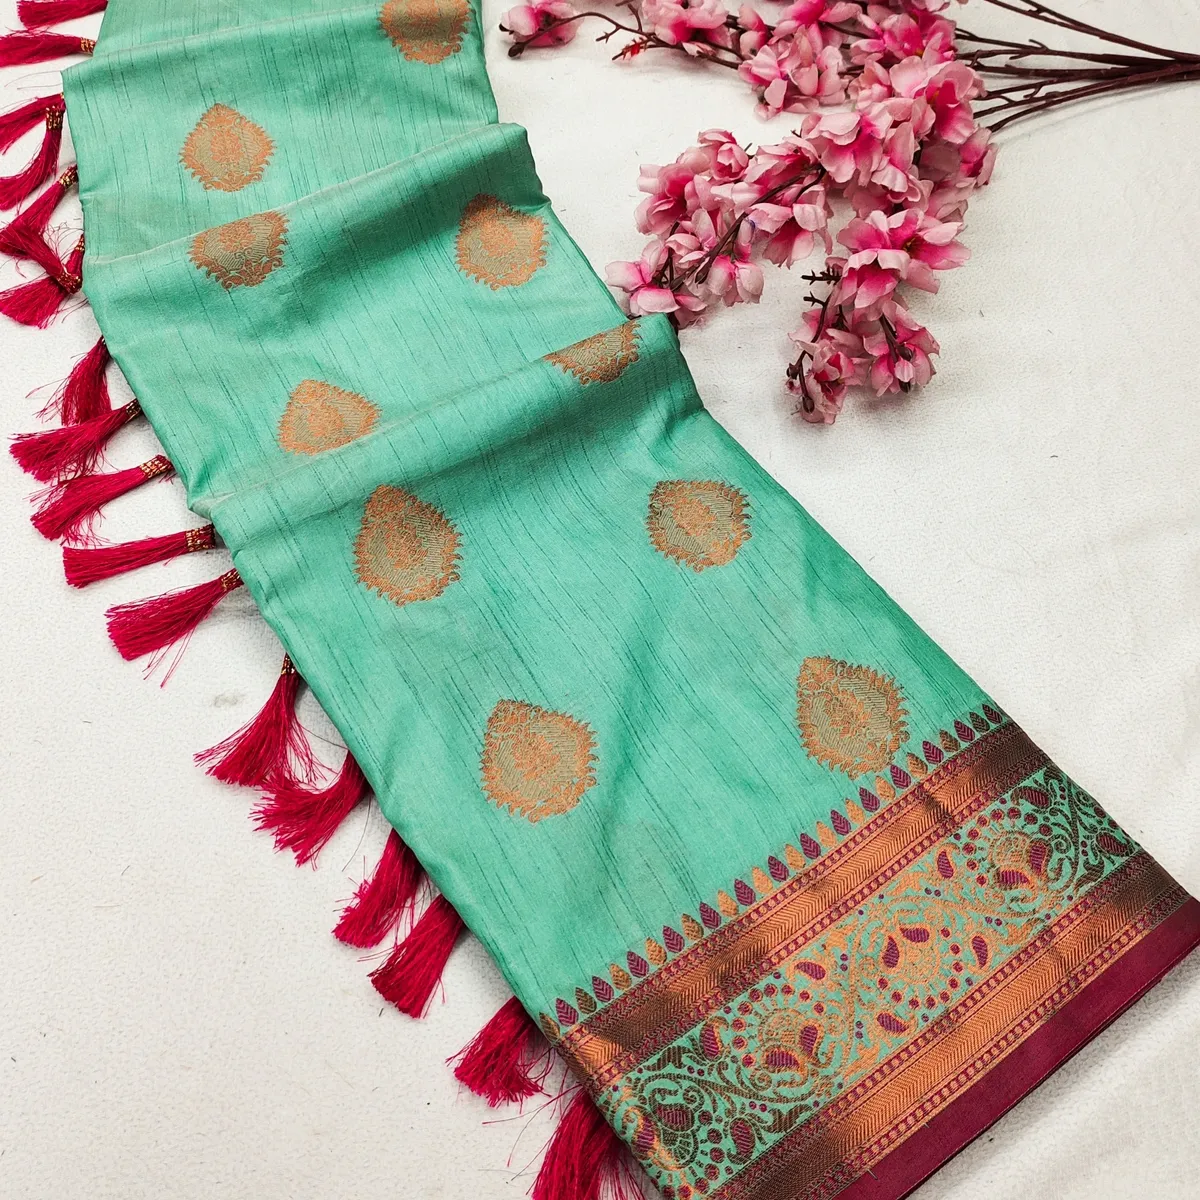 Her yerde benzersiz bakır Zari weaiwng motifleri ile Trendy saree yeni varış yumuşak prim ipek kumaş saree ile güzel görünüyorsun